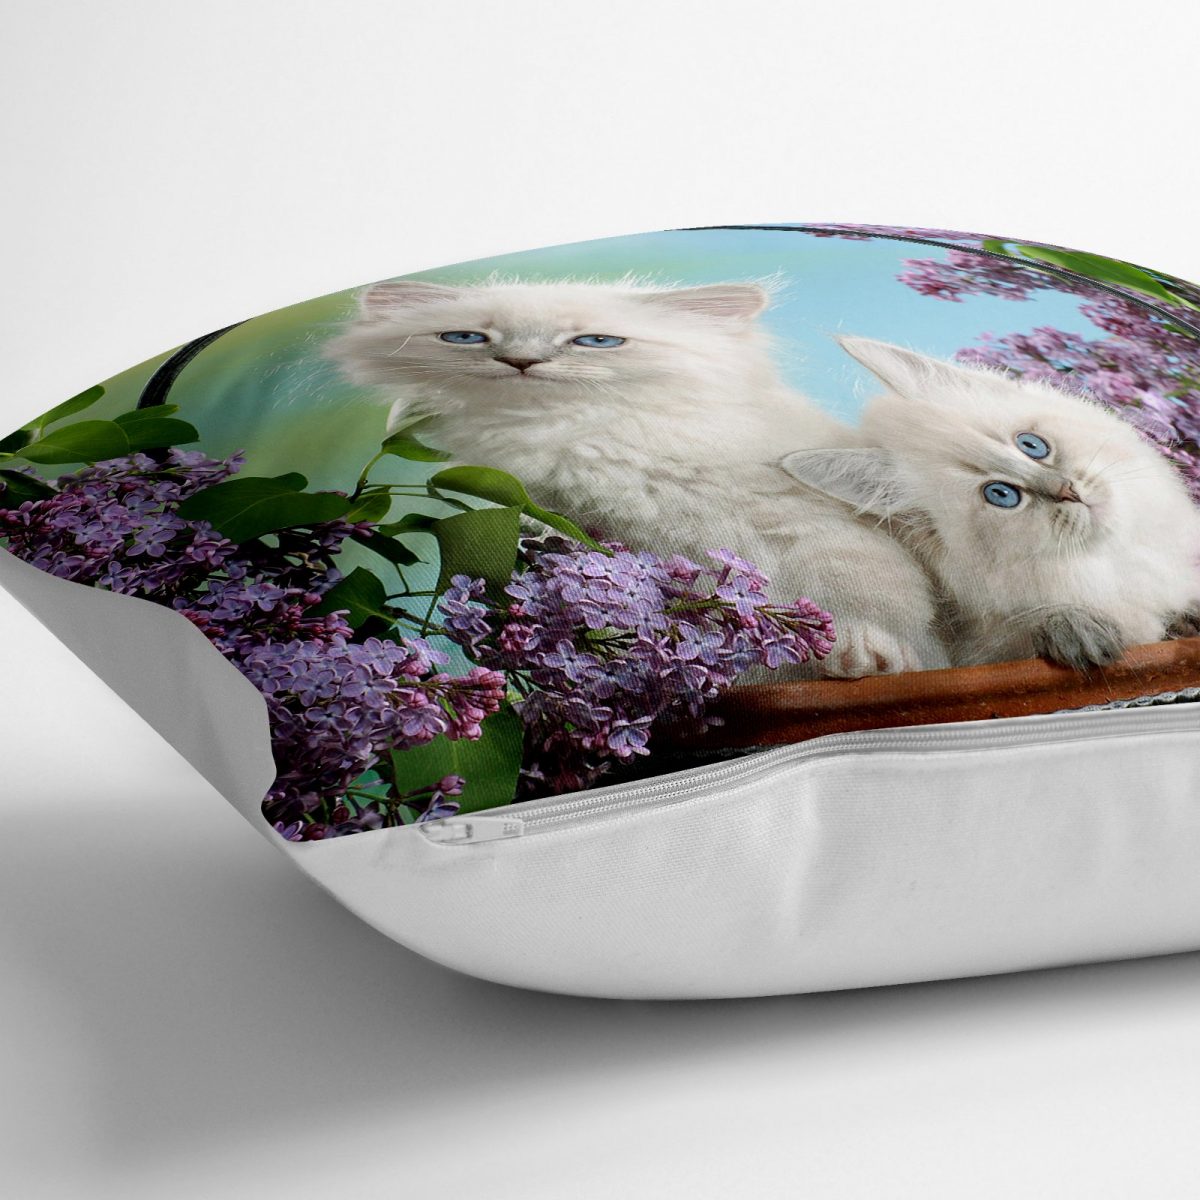 Beyaz Kedicikler Tasarımlı Djital Baskılı Dekoratif Yer Minderi - 70 x 70 cm Realhomes